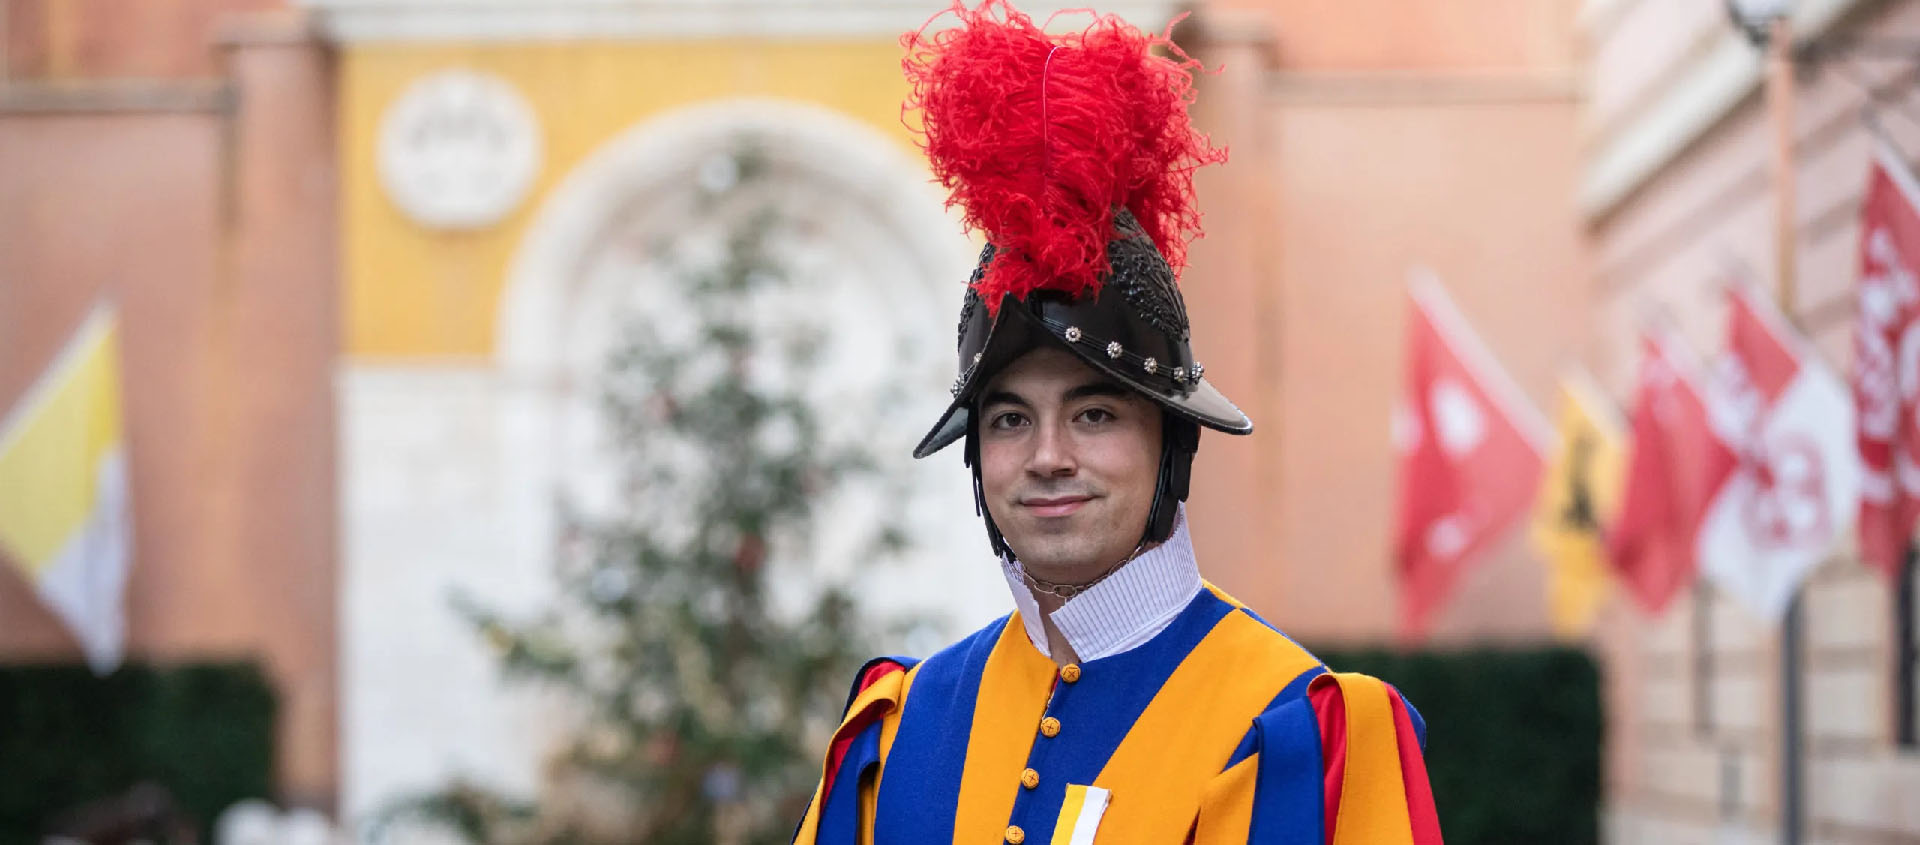 Le vice-Caporal Eliah Cinotti est diplômé de l'école supérieure de commerce de Bienne | © Garde pontificale suisse